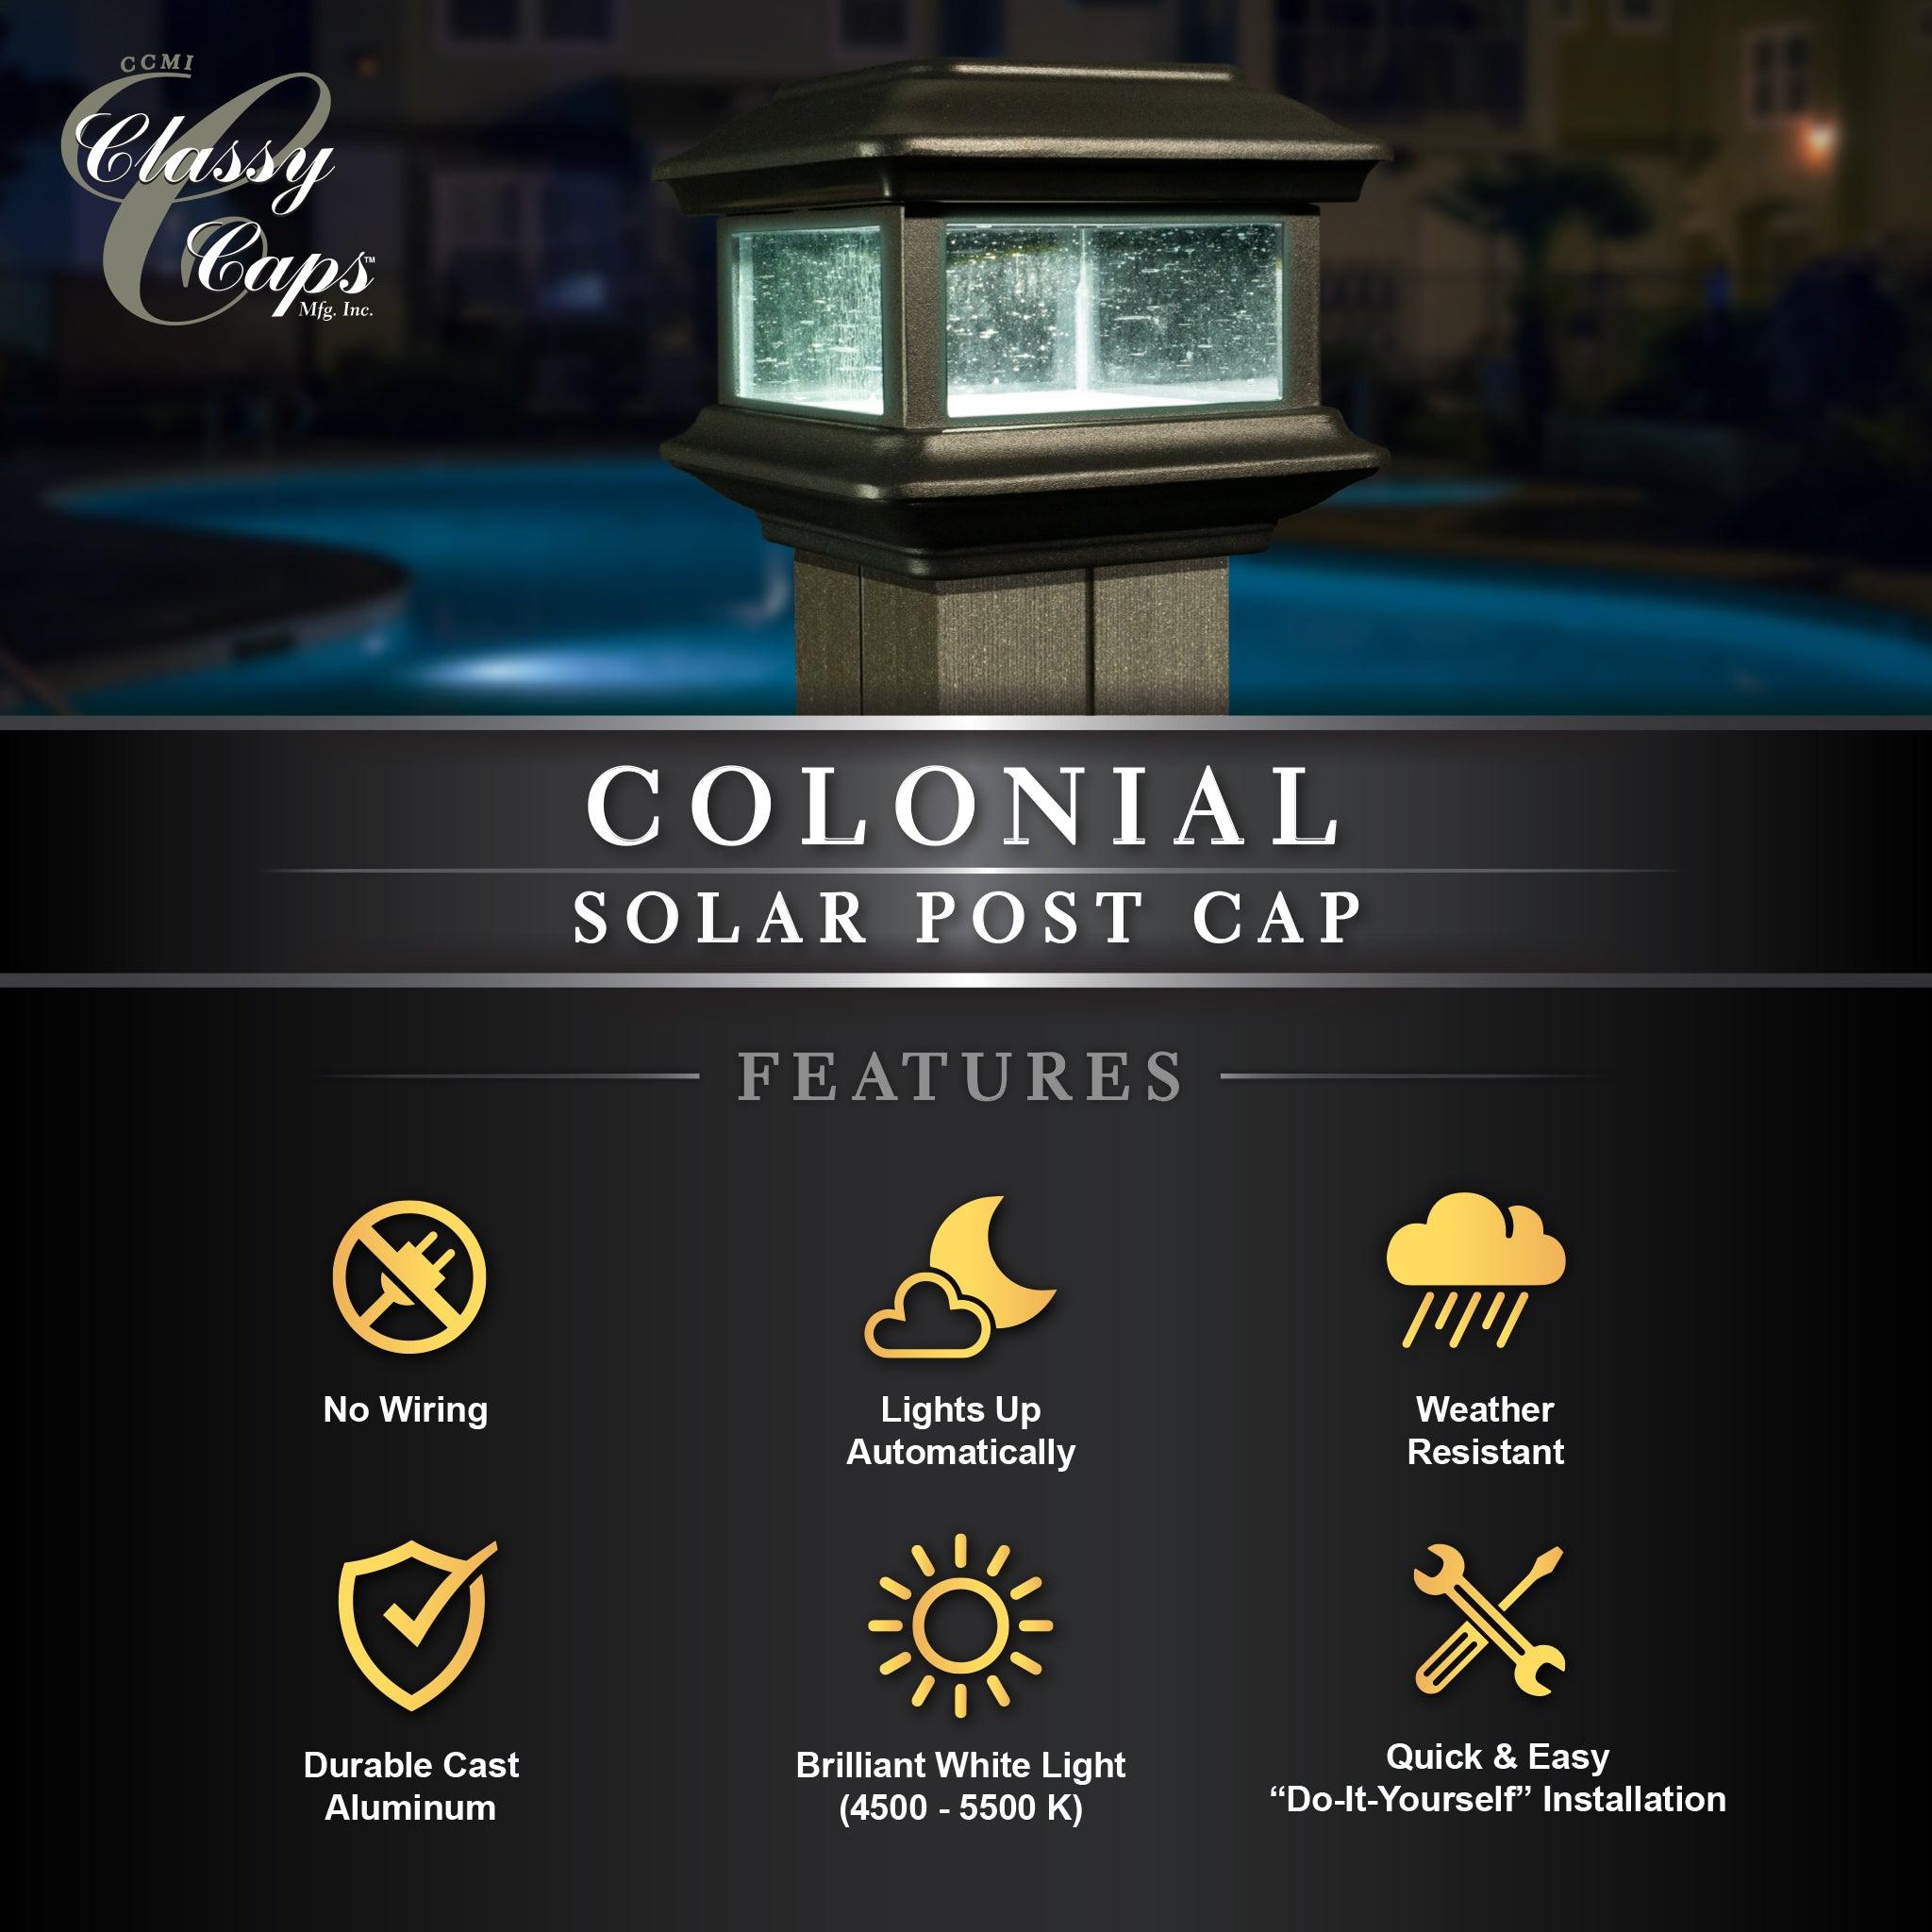 Colonial Solar Post Cap - Black - Classy Caps Mfg. Inc.